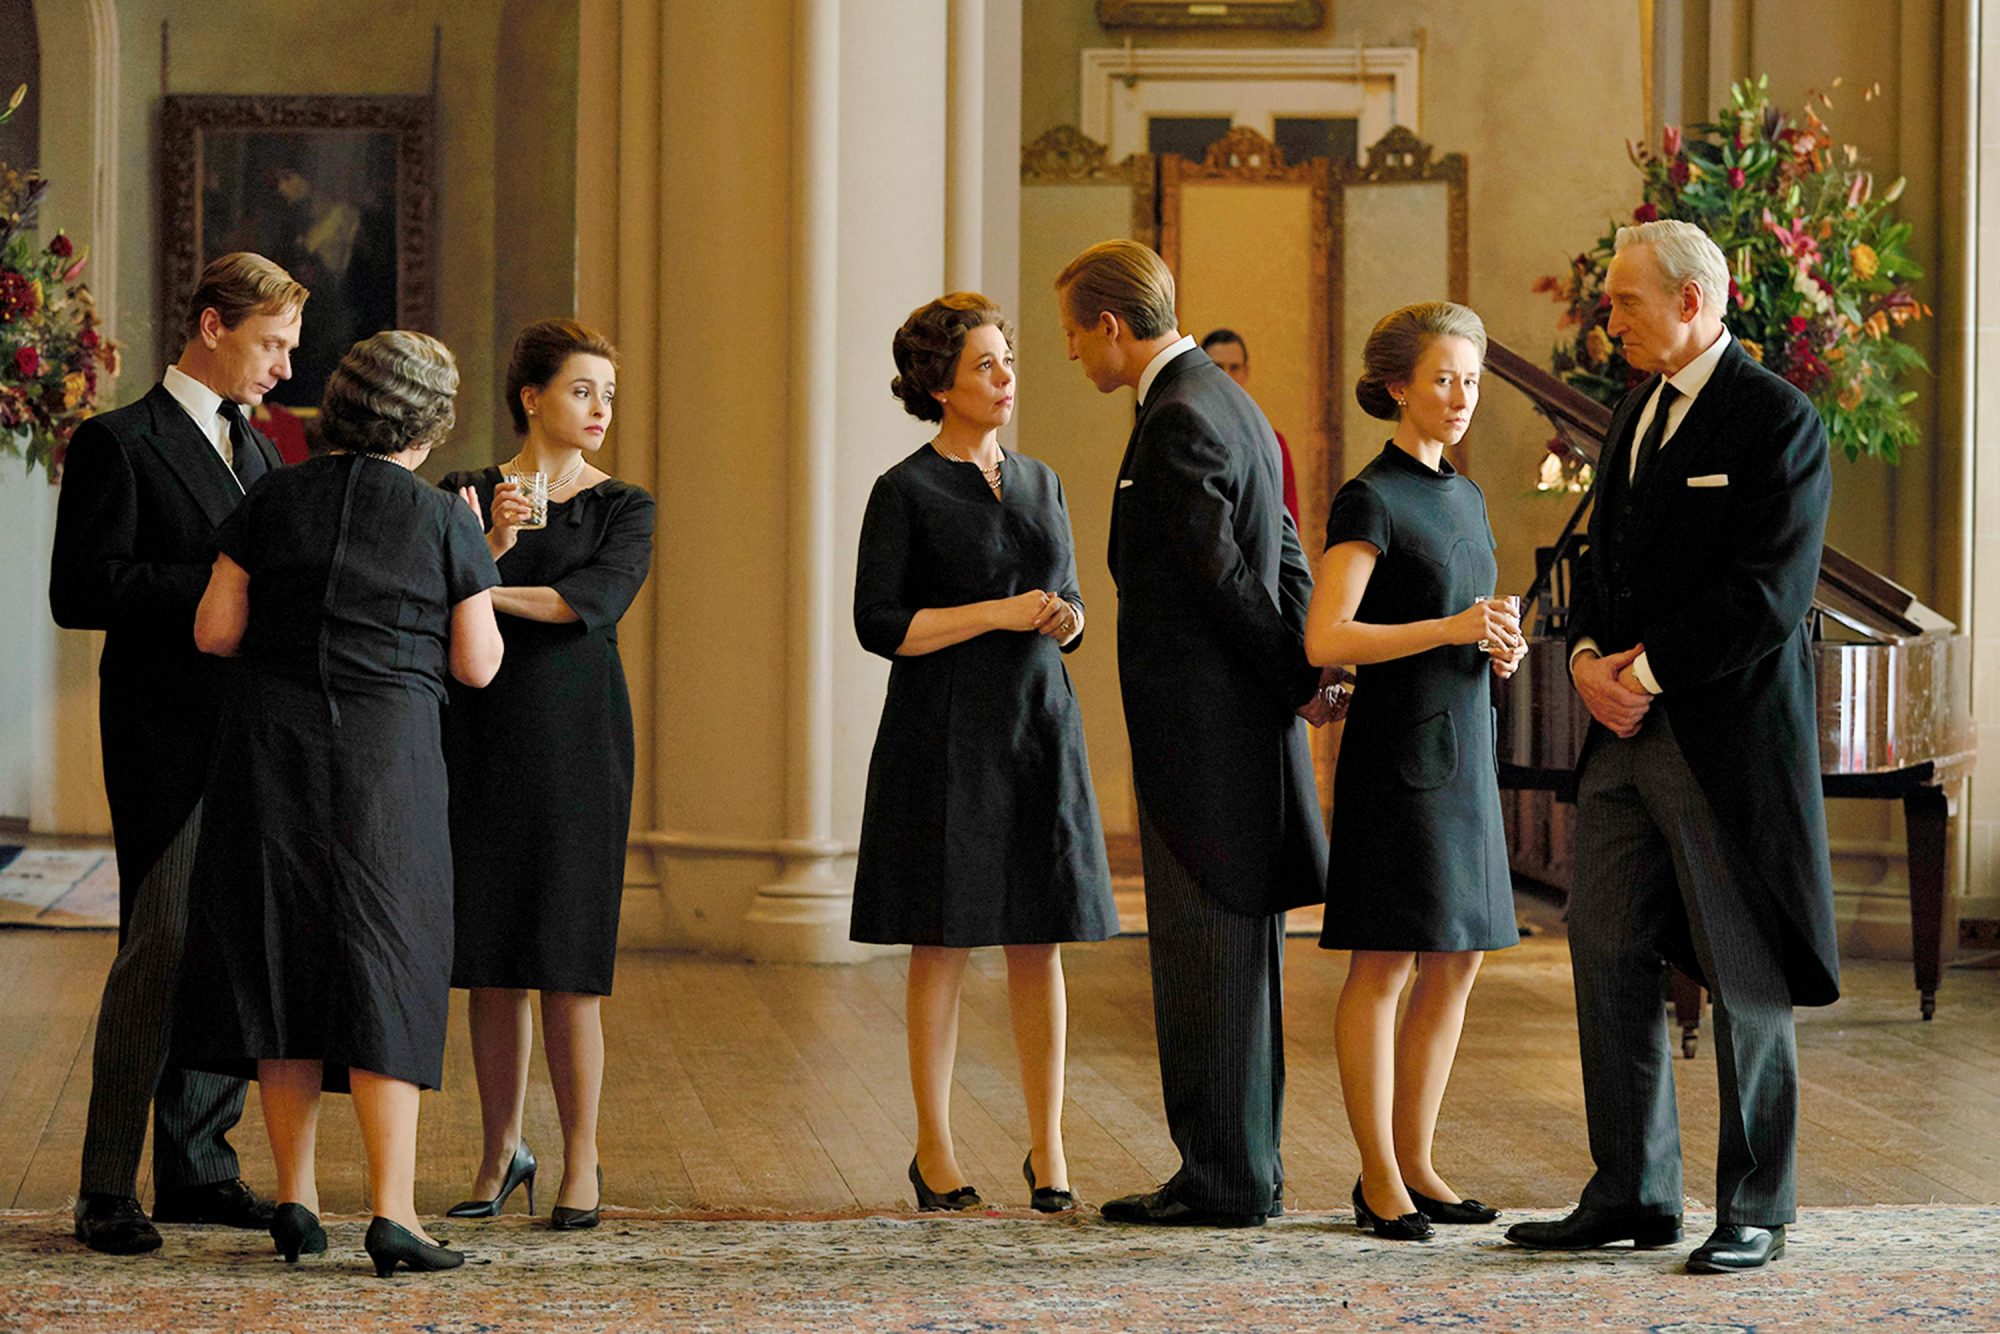 The crown família real conversando no palácio de buckingham vestidos de preto